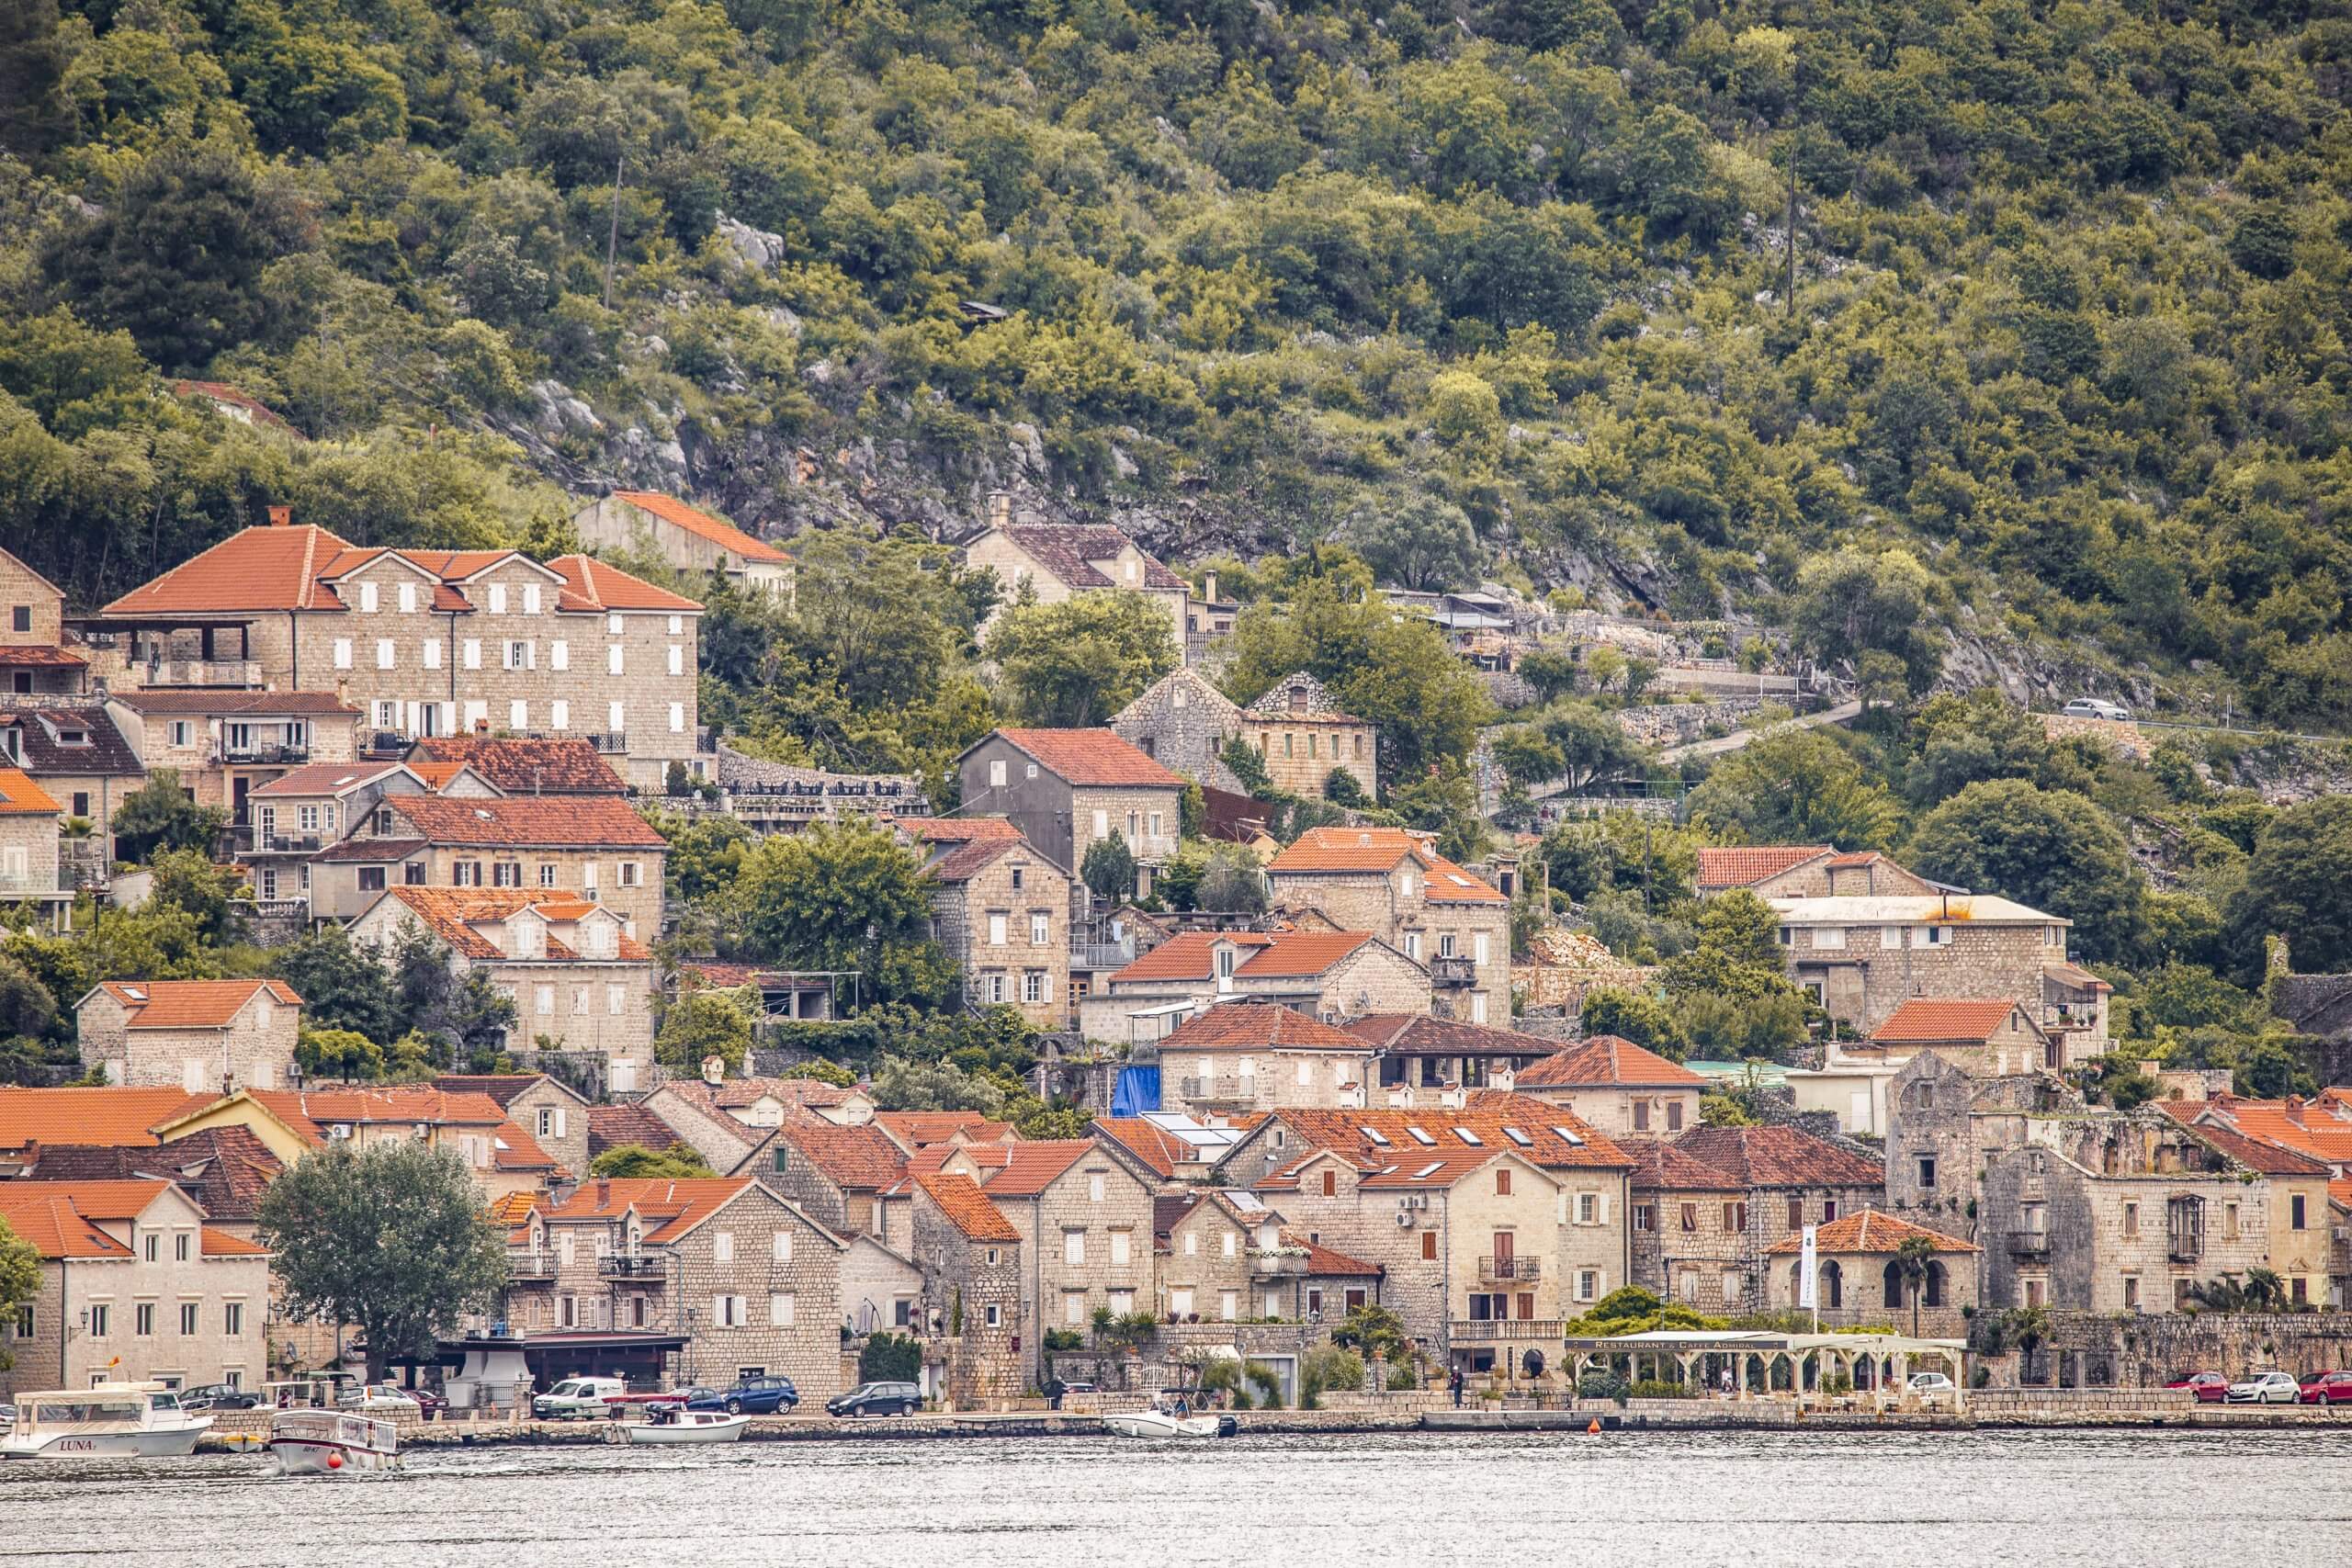 Städtchen an der Bucht von Kotor